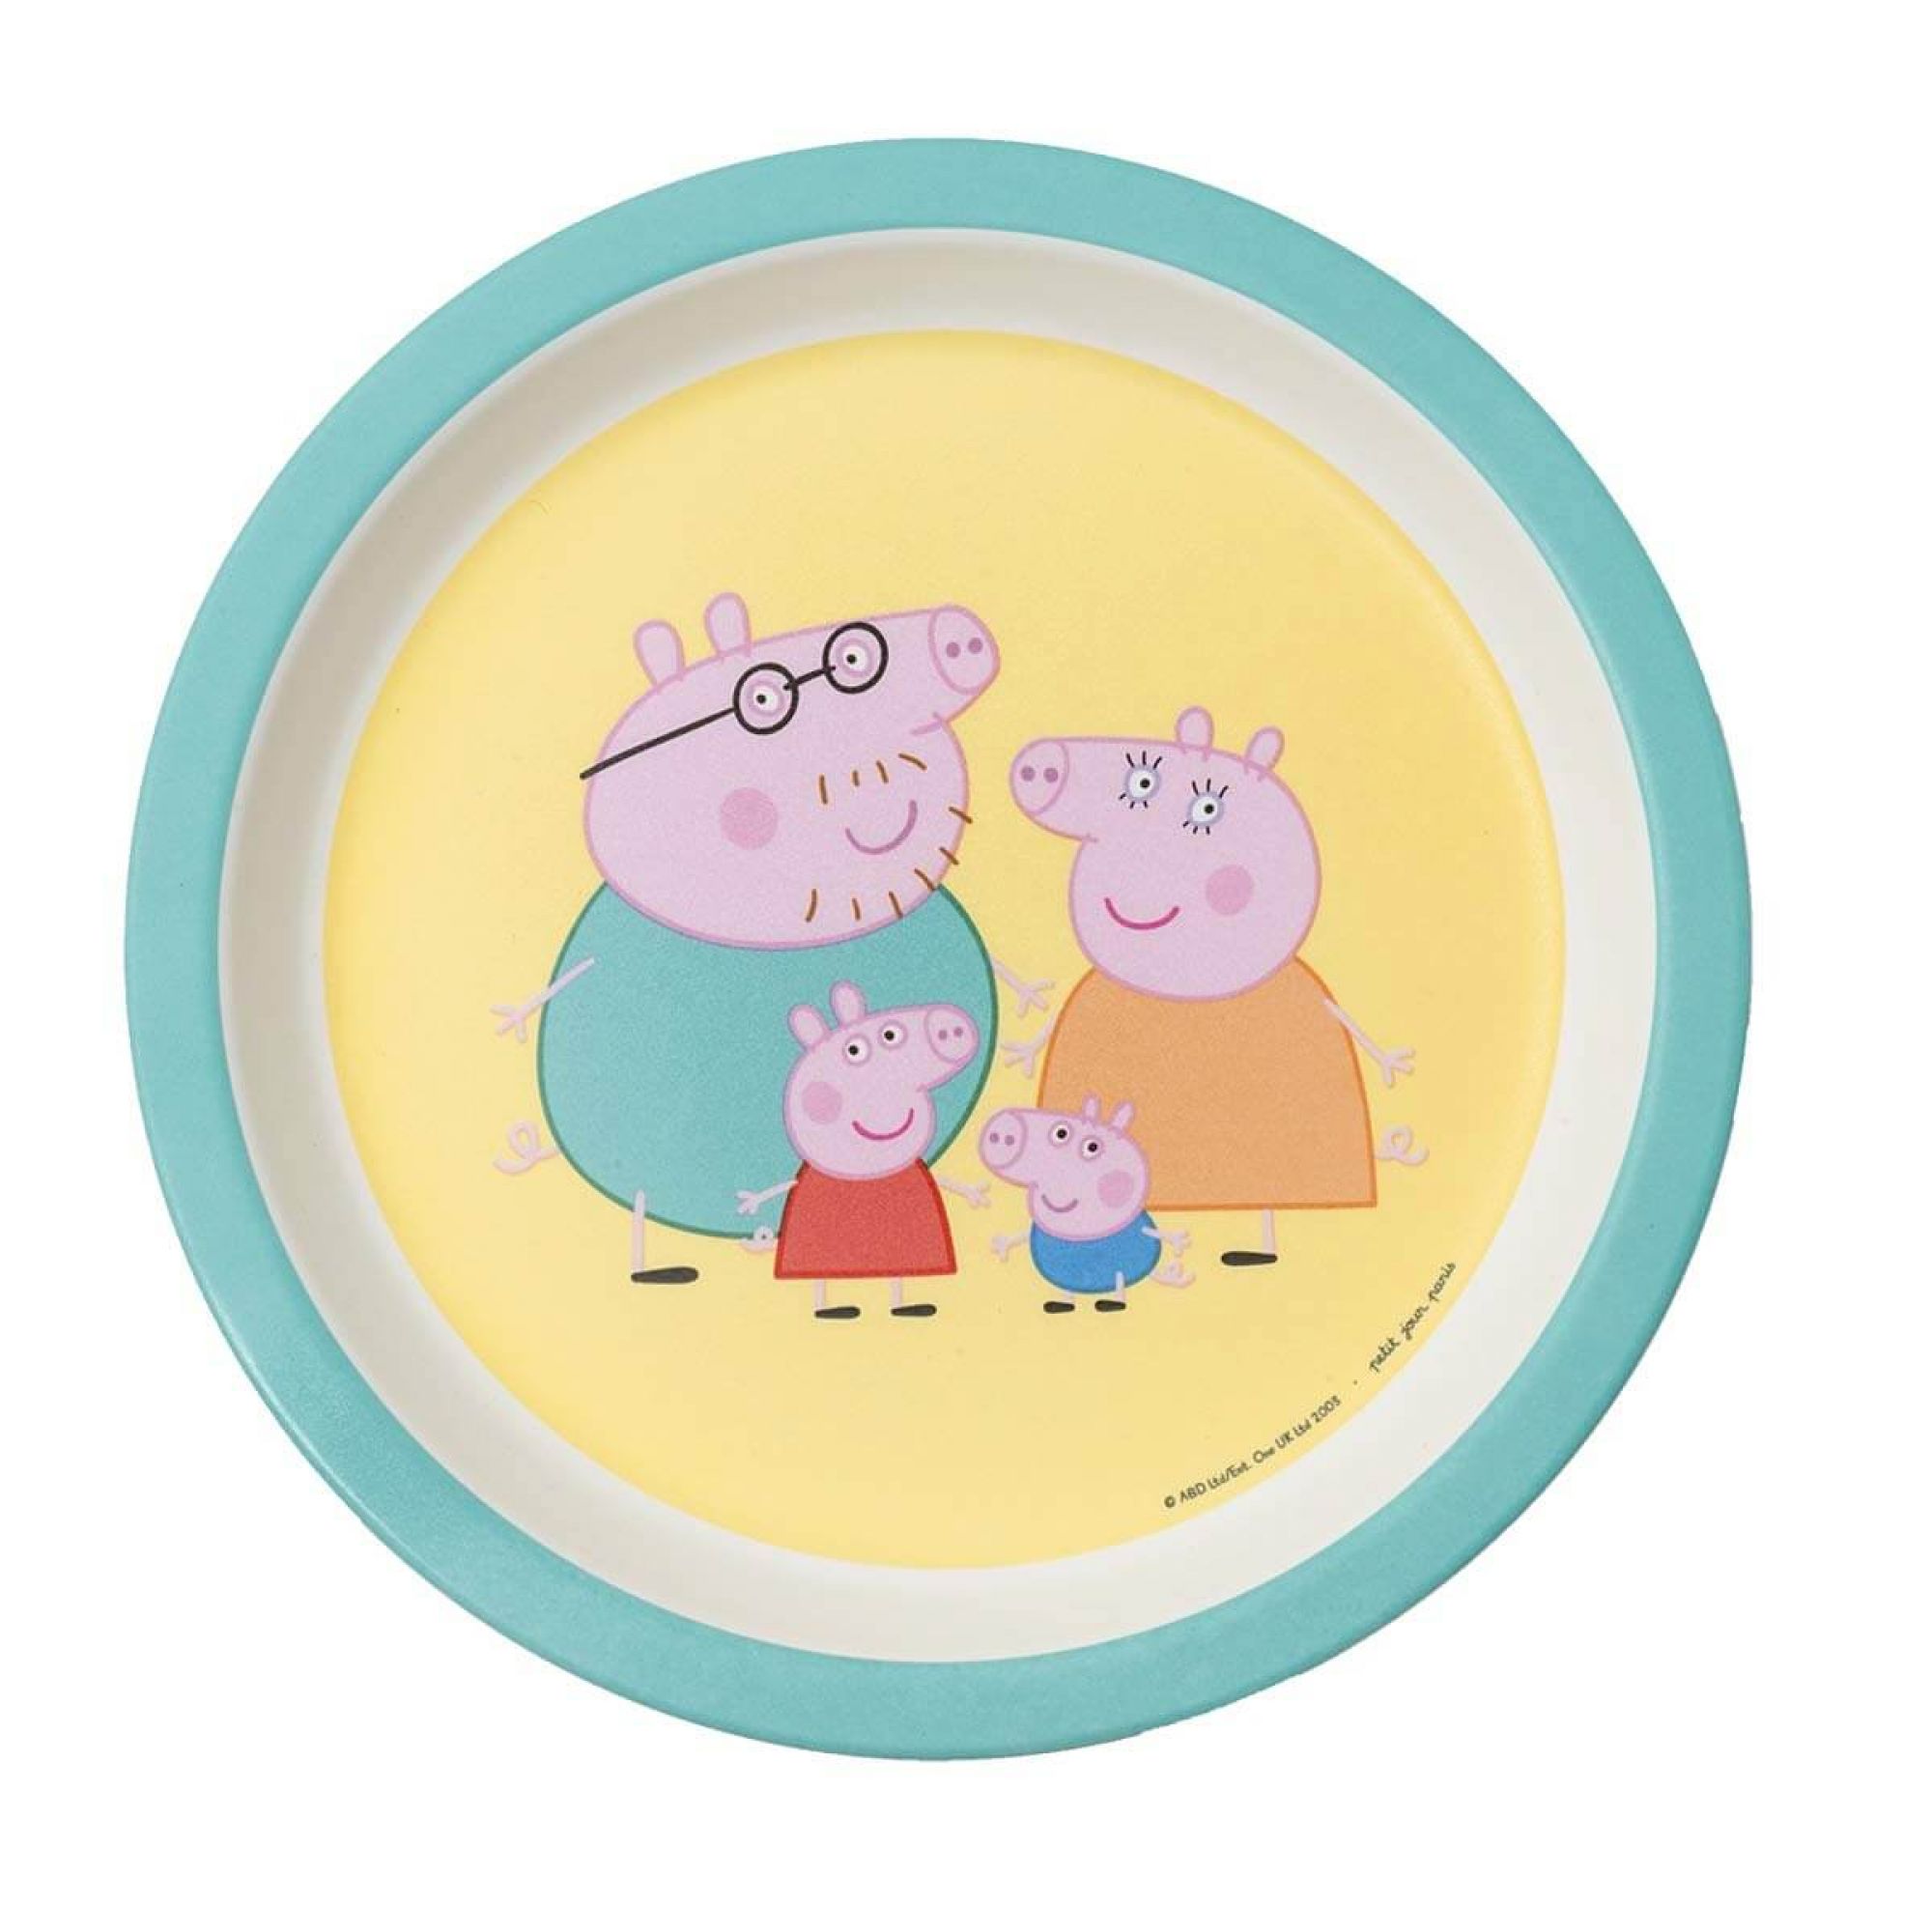 Peppa pig - mon livre-jeu éducatif - 1 5 - 5 ans - La Poste